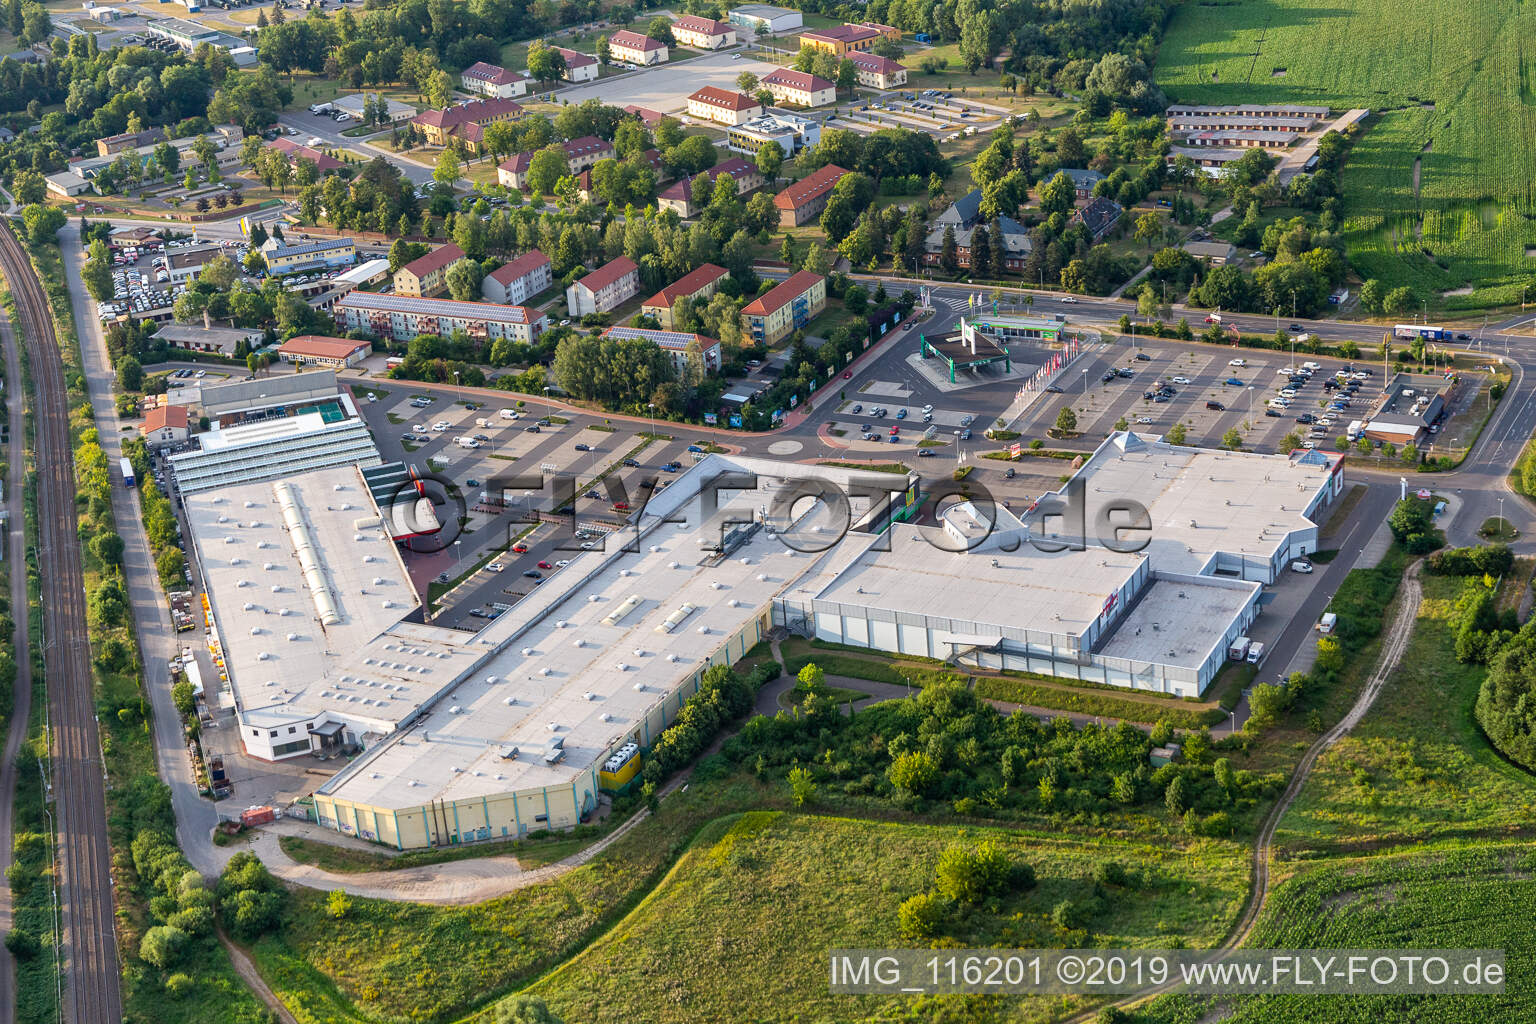 Vue aérienne de Centrale d'achat du marché à Prenzlau dans le département Brandebourg, Allemagne